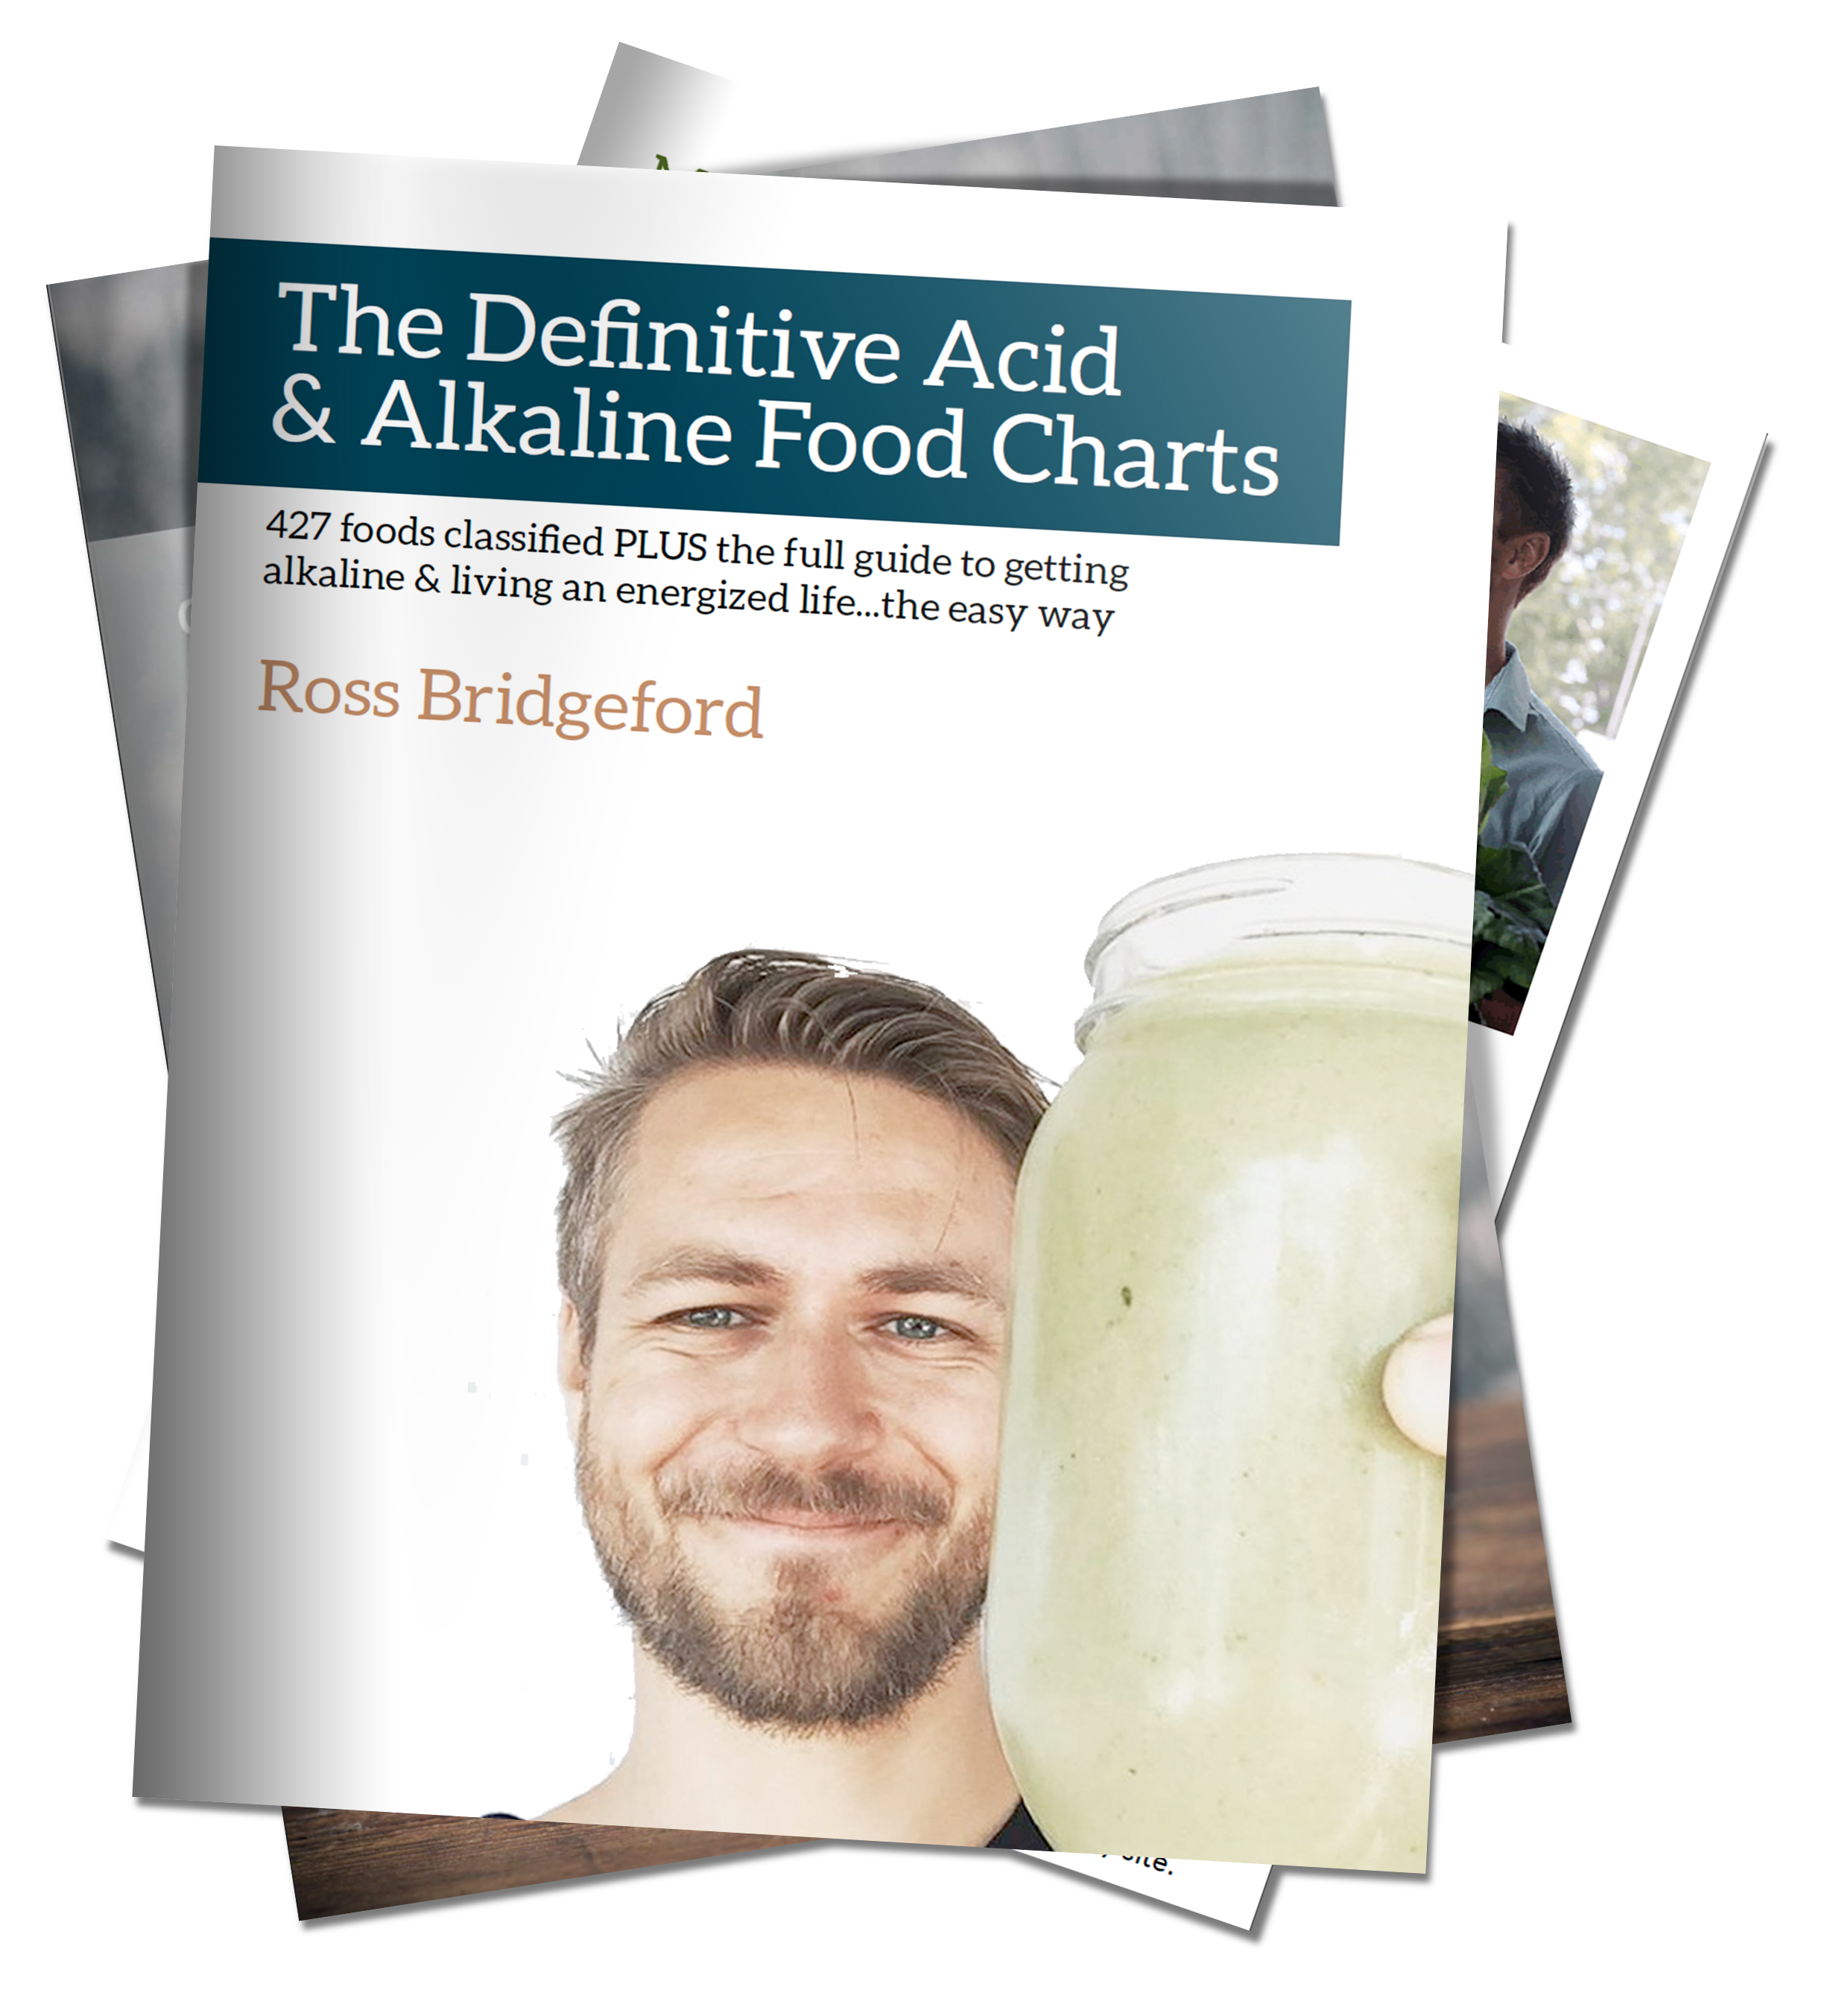 Alkaline Food Chart Printable